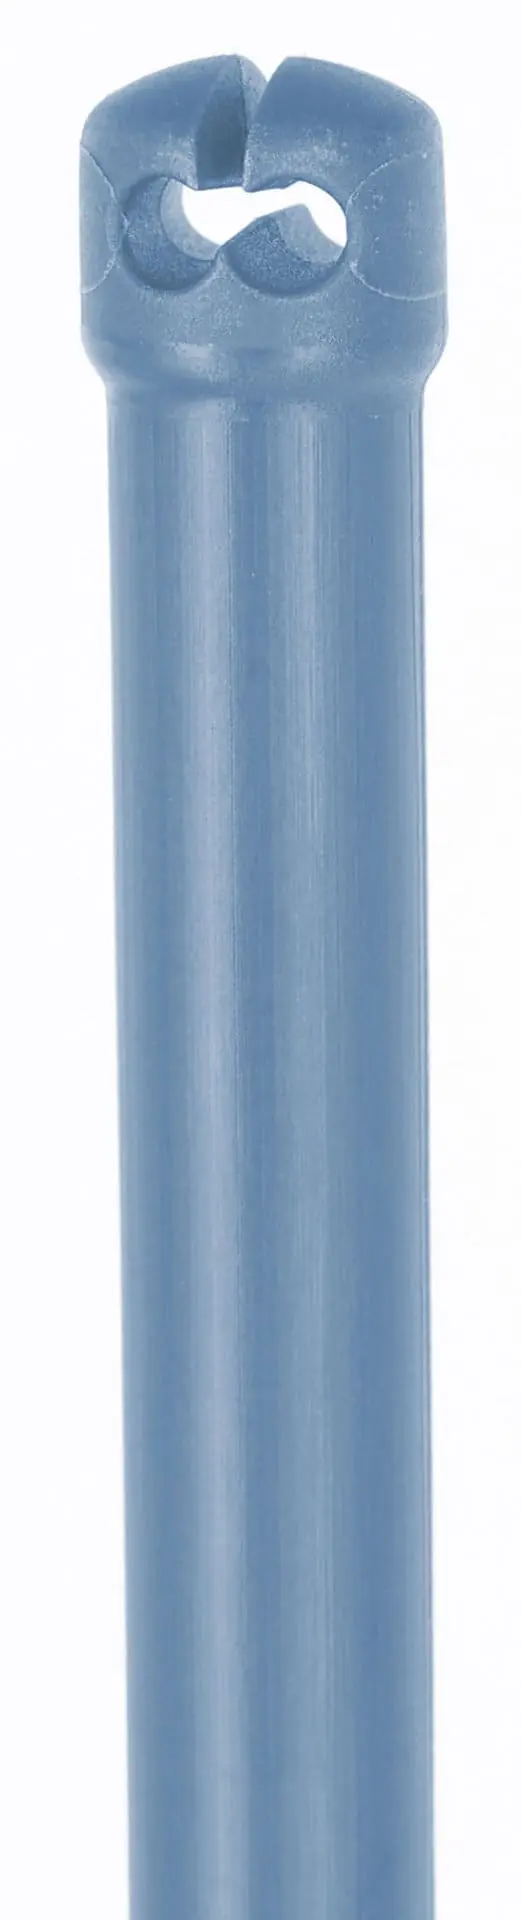 Premium Spare Post, blue 122 cm - Double Prong